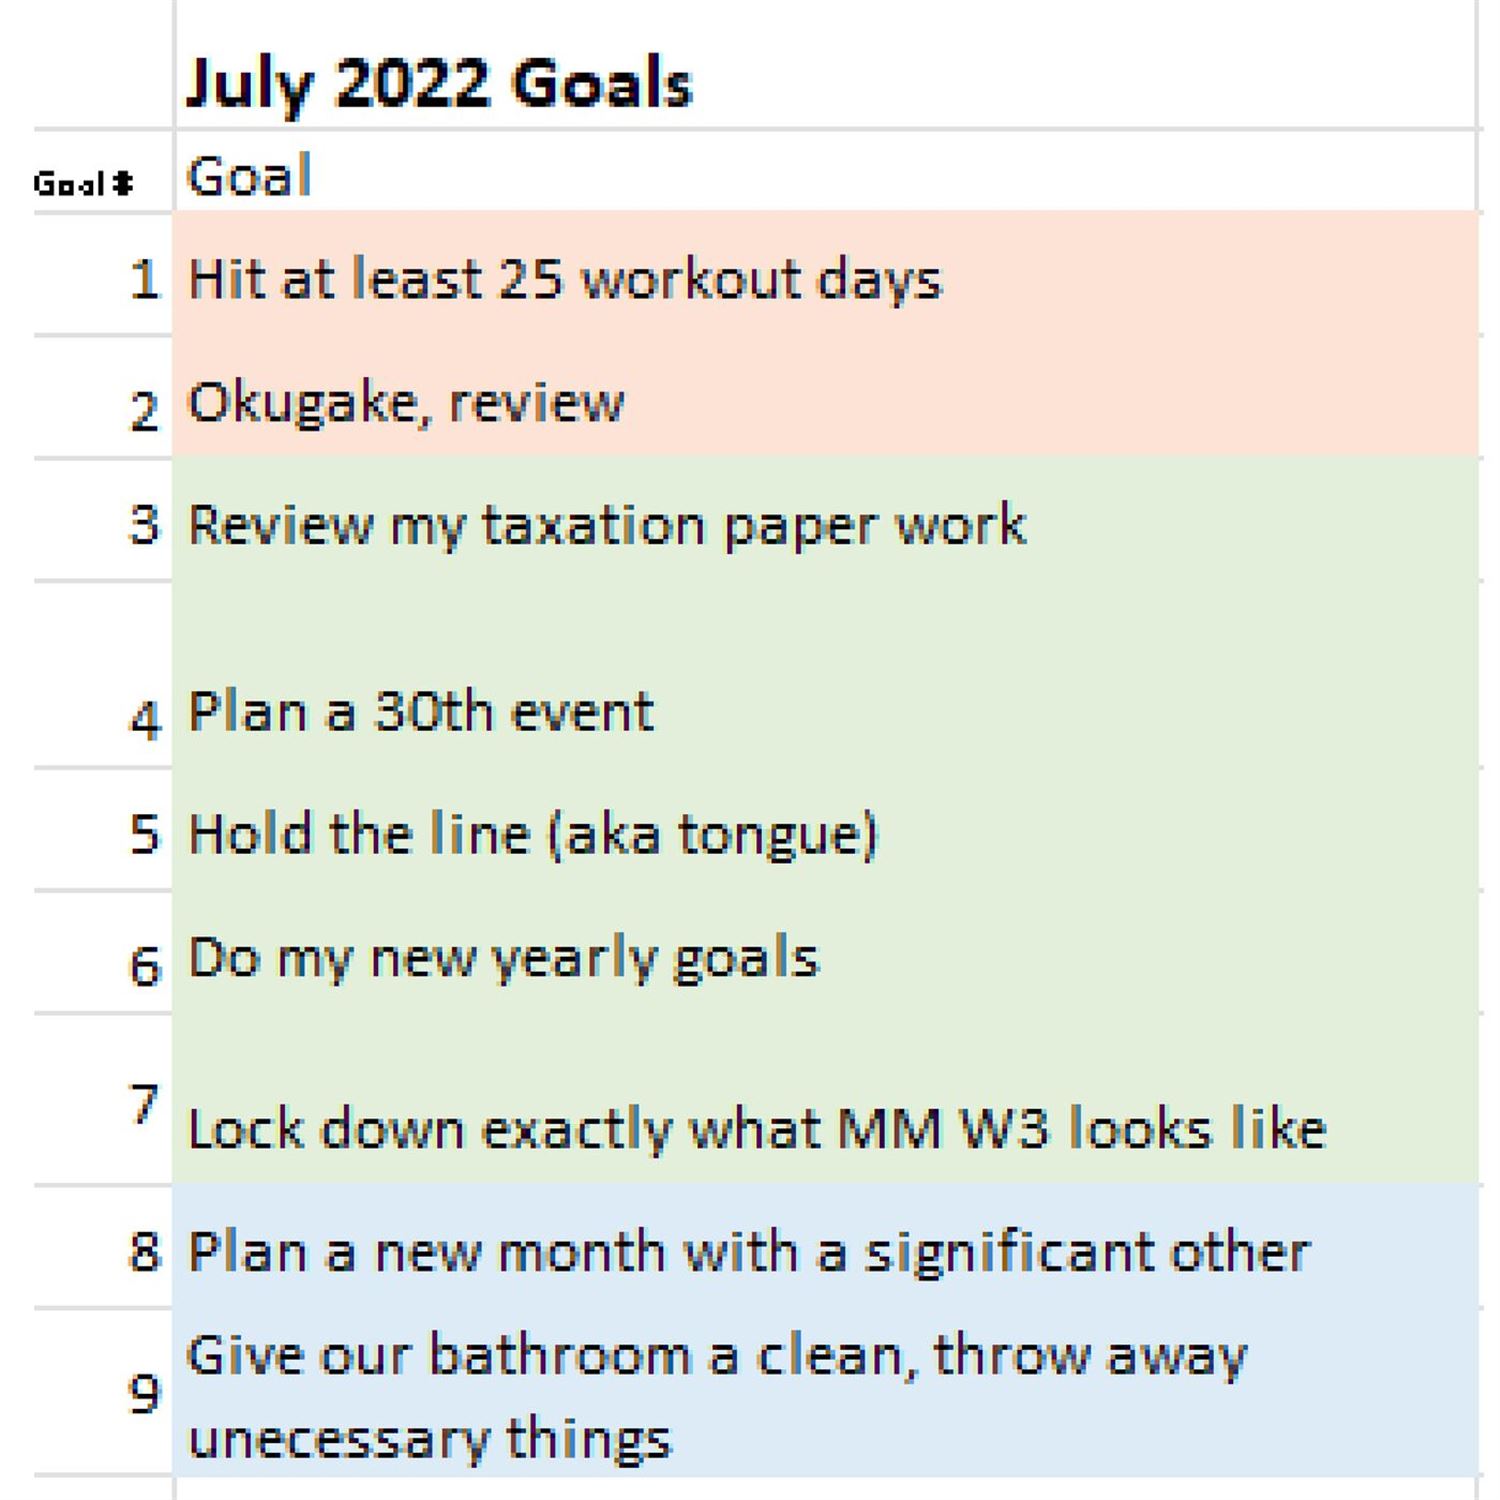 Juan's July Goals